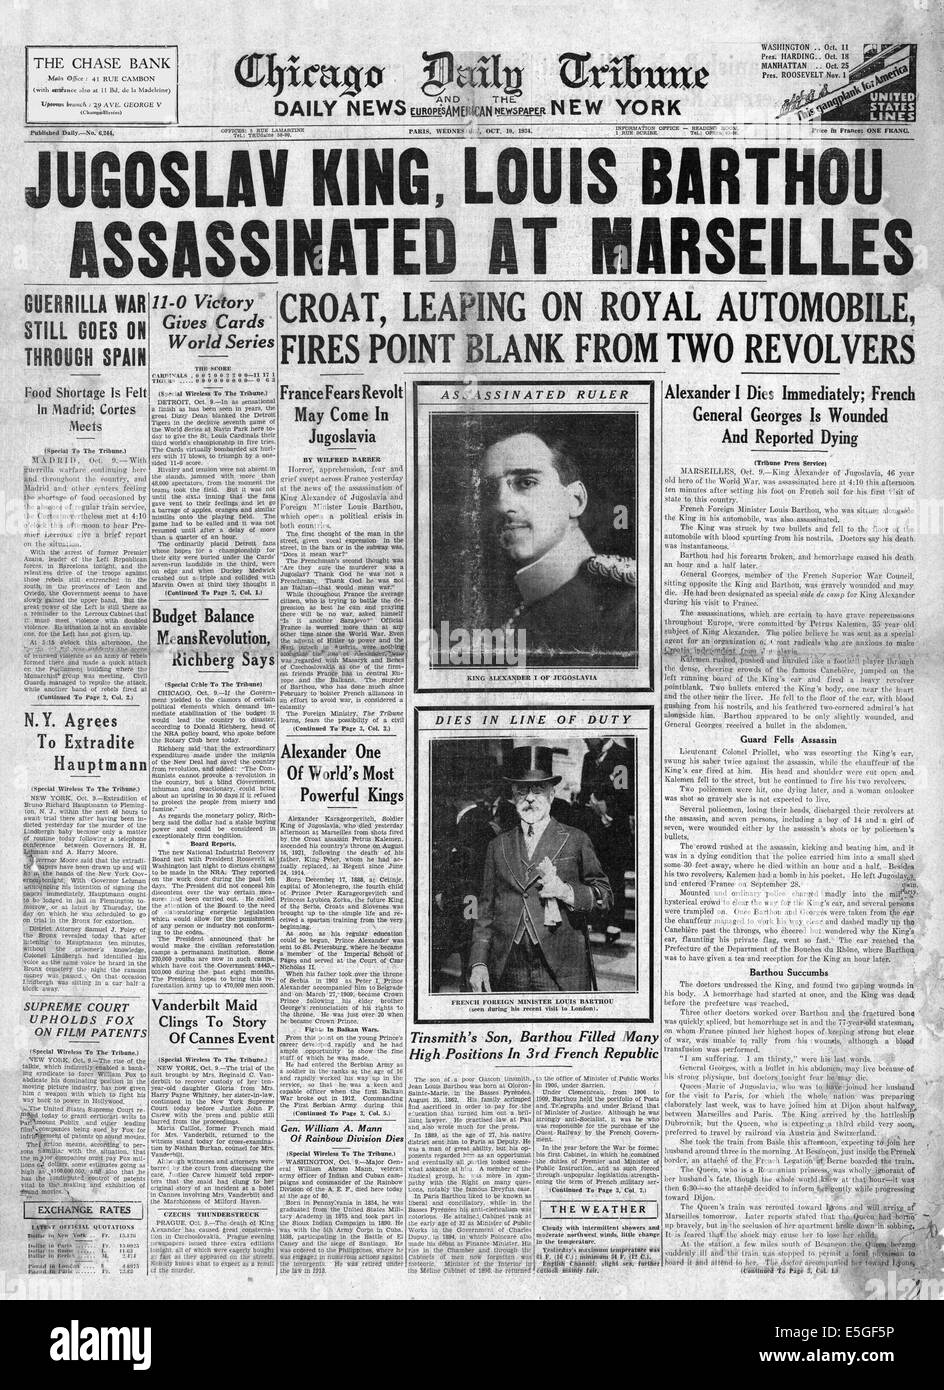 1934 Chicago Tribune quotidiano pagina anteriore segnalato l assassinio del re Alessandro di Jugoslavia & straniere francese Il Ministro Louis Barthou a Parigi Foto Stock